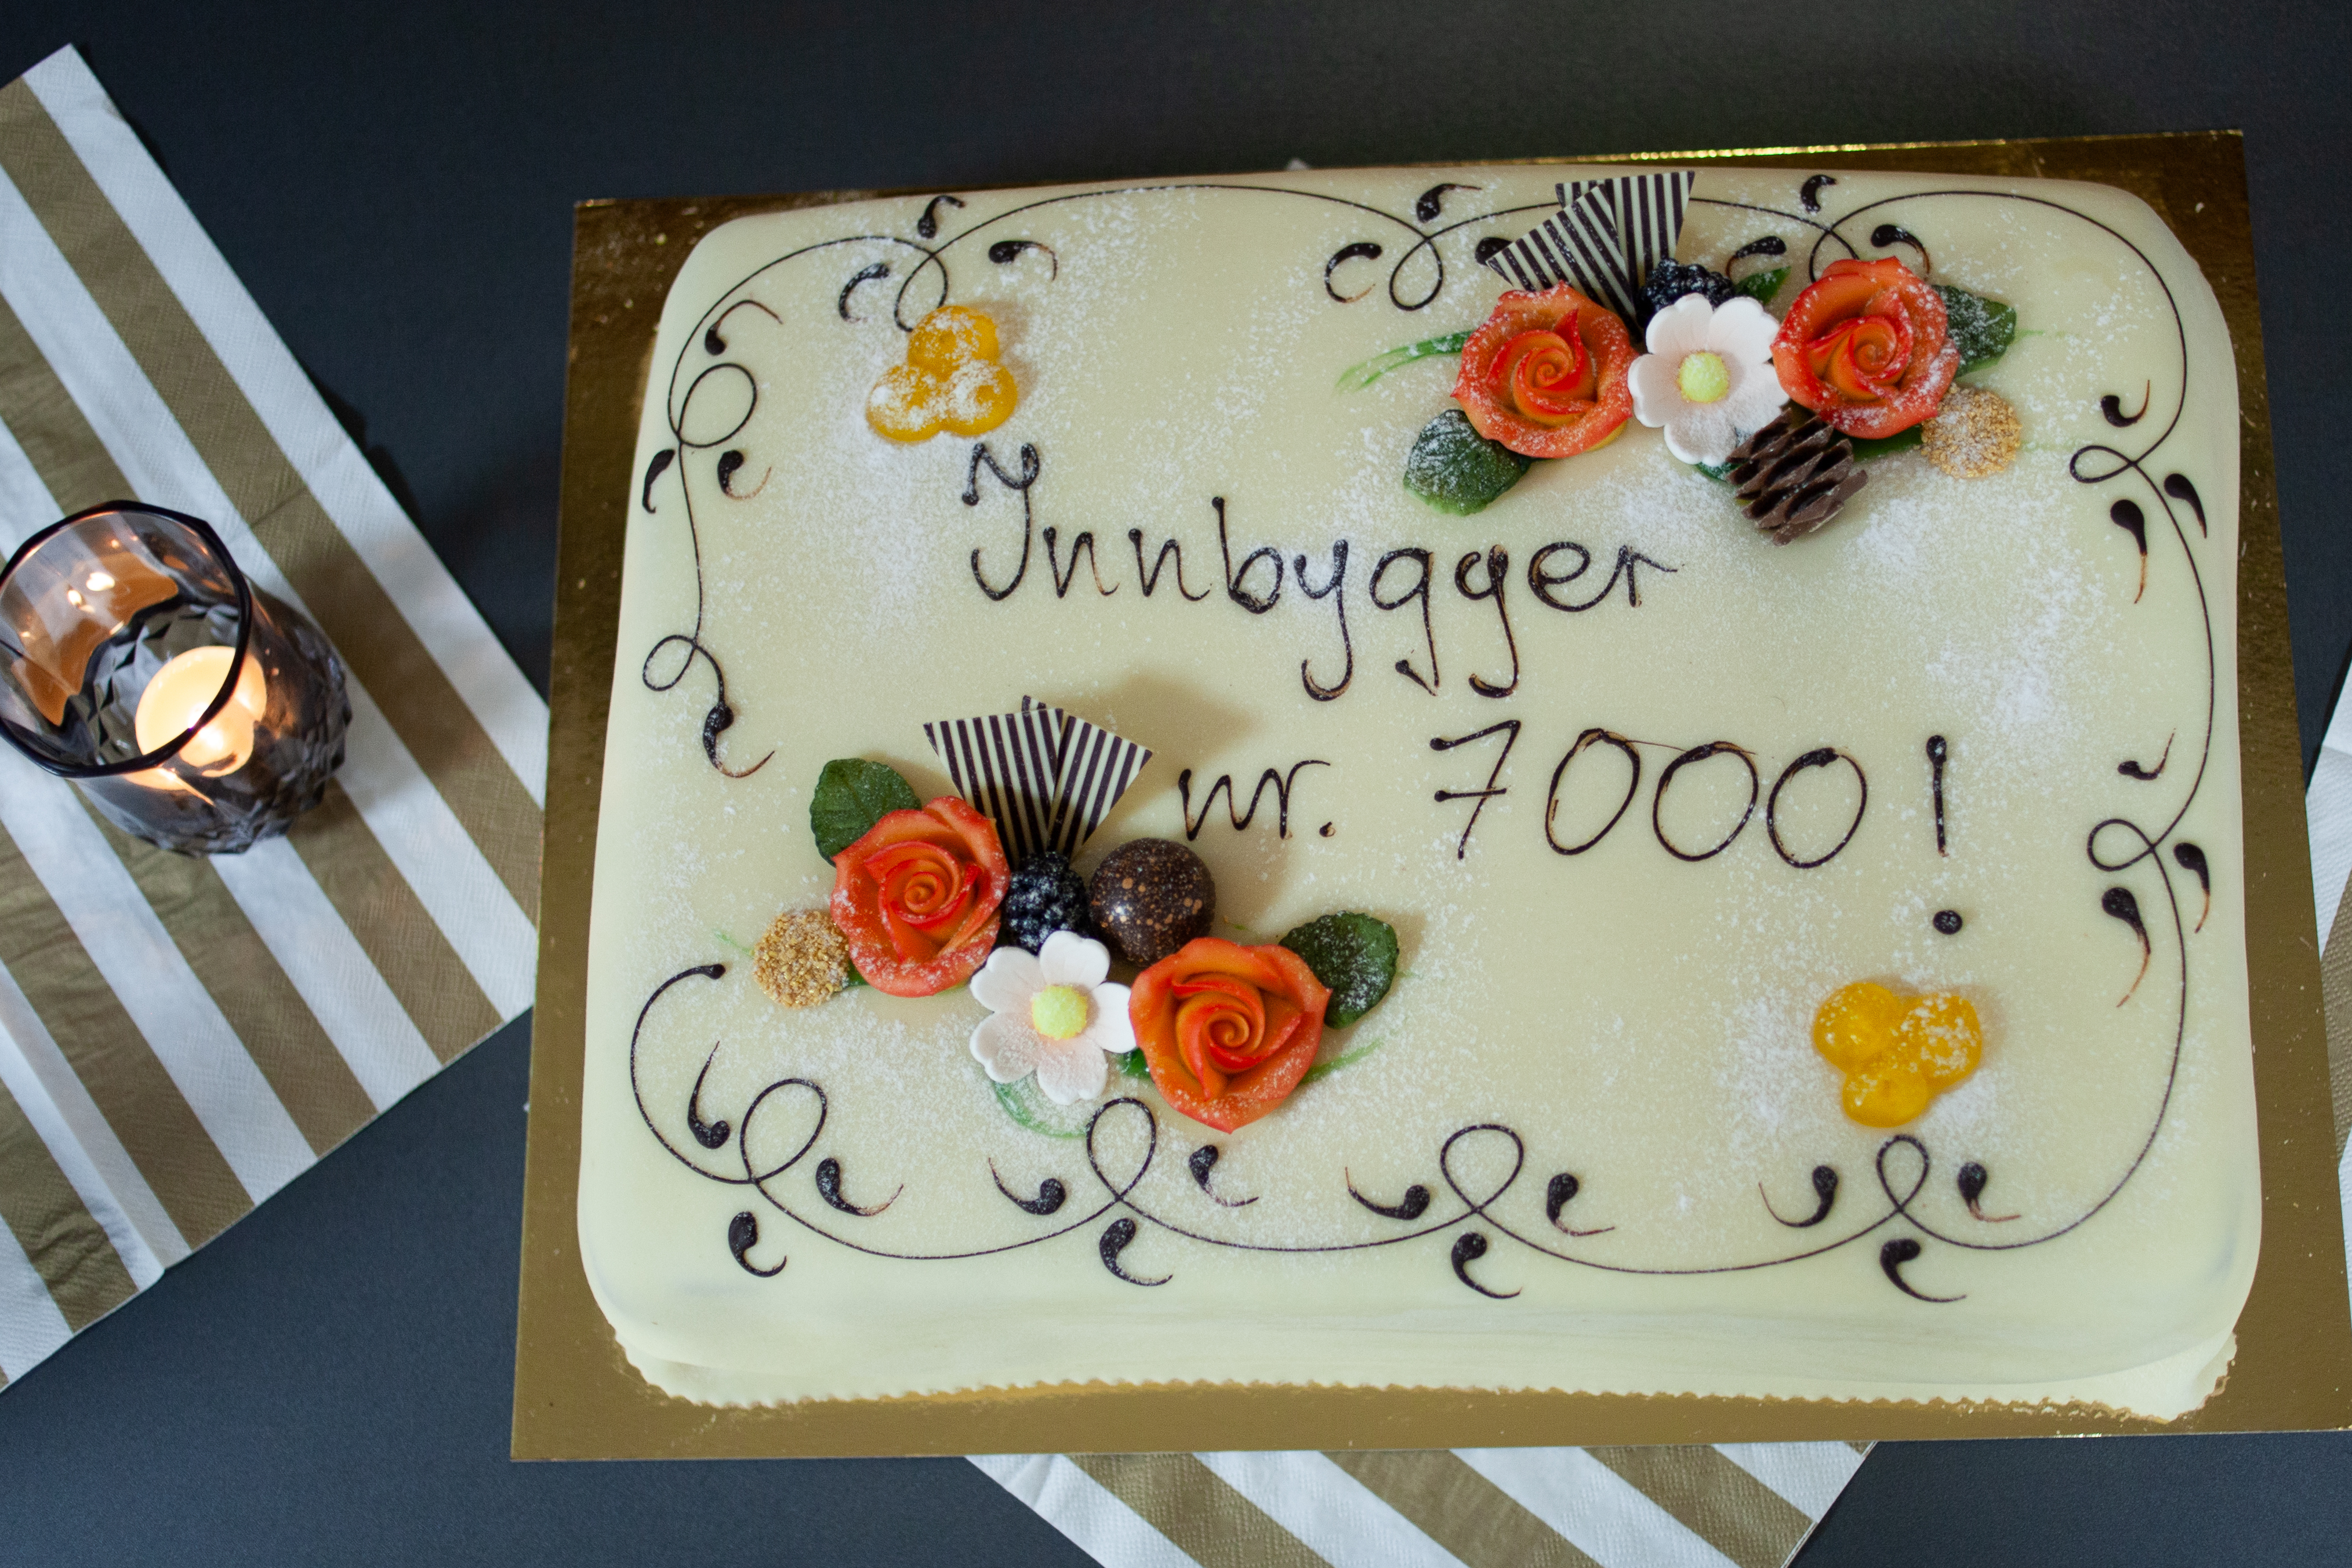 Bildet viser en kake. Den er dekorert med blant annet orange og hvite blomster. Over to linjer står teksten 